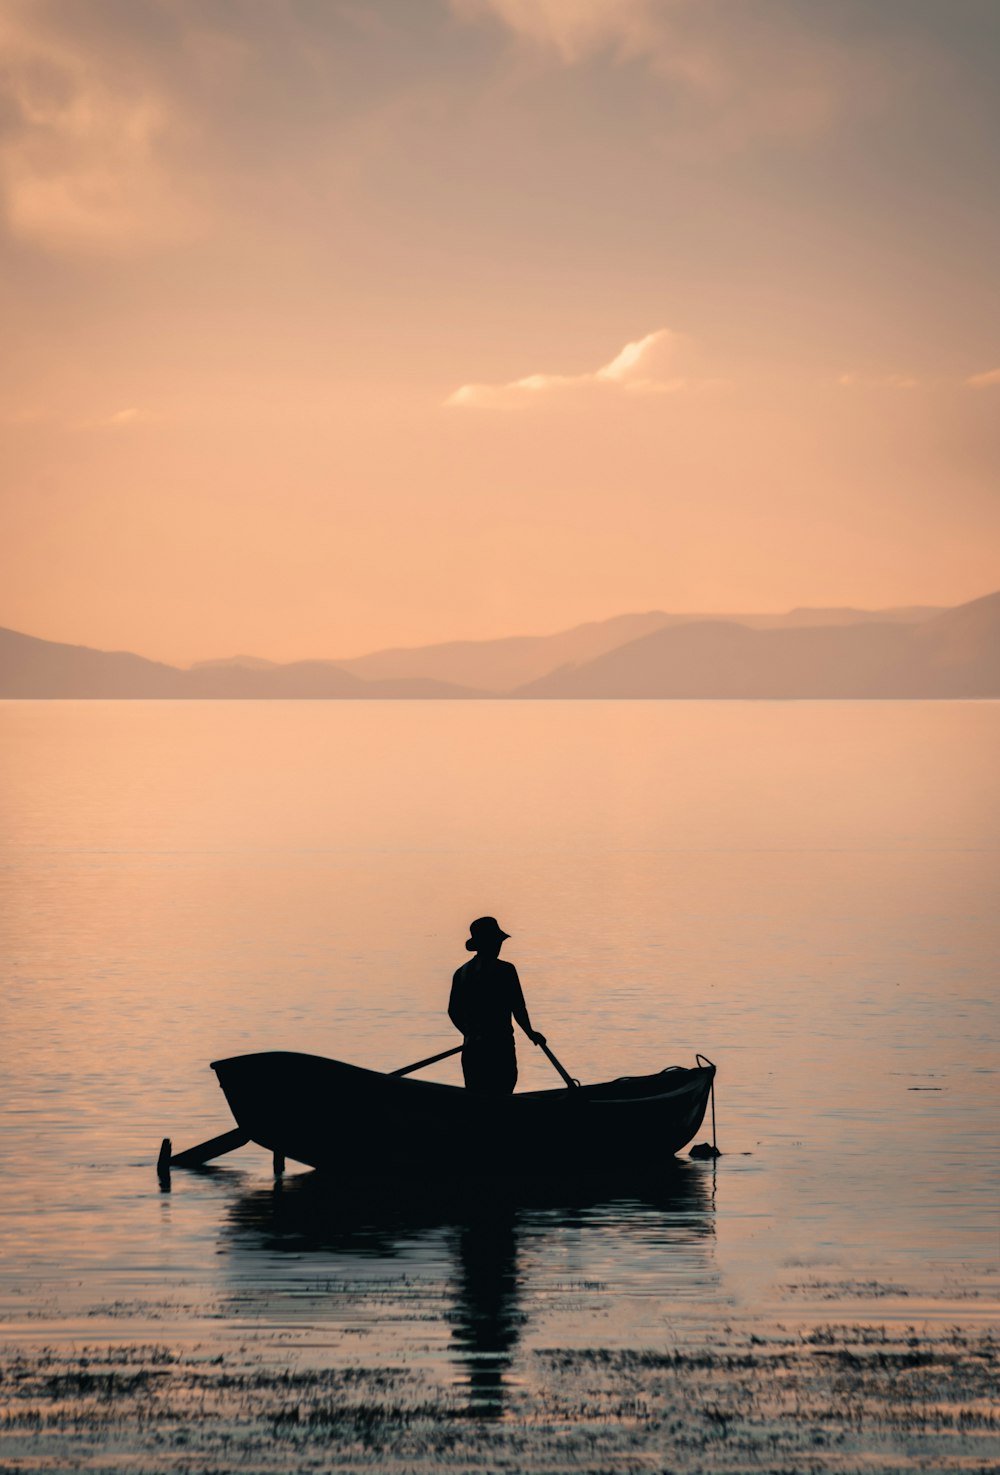 homem no barco no lago durante o dia